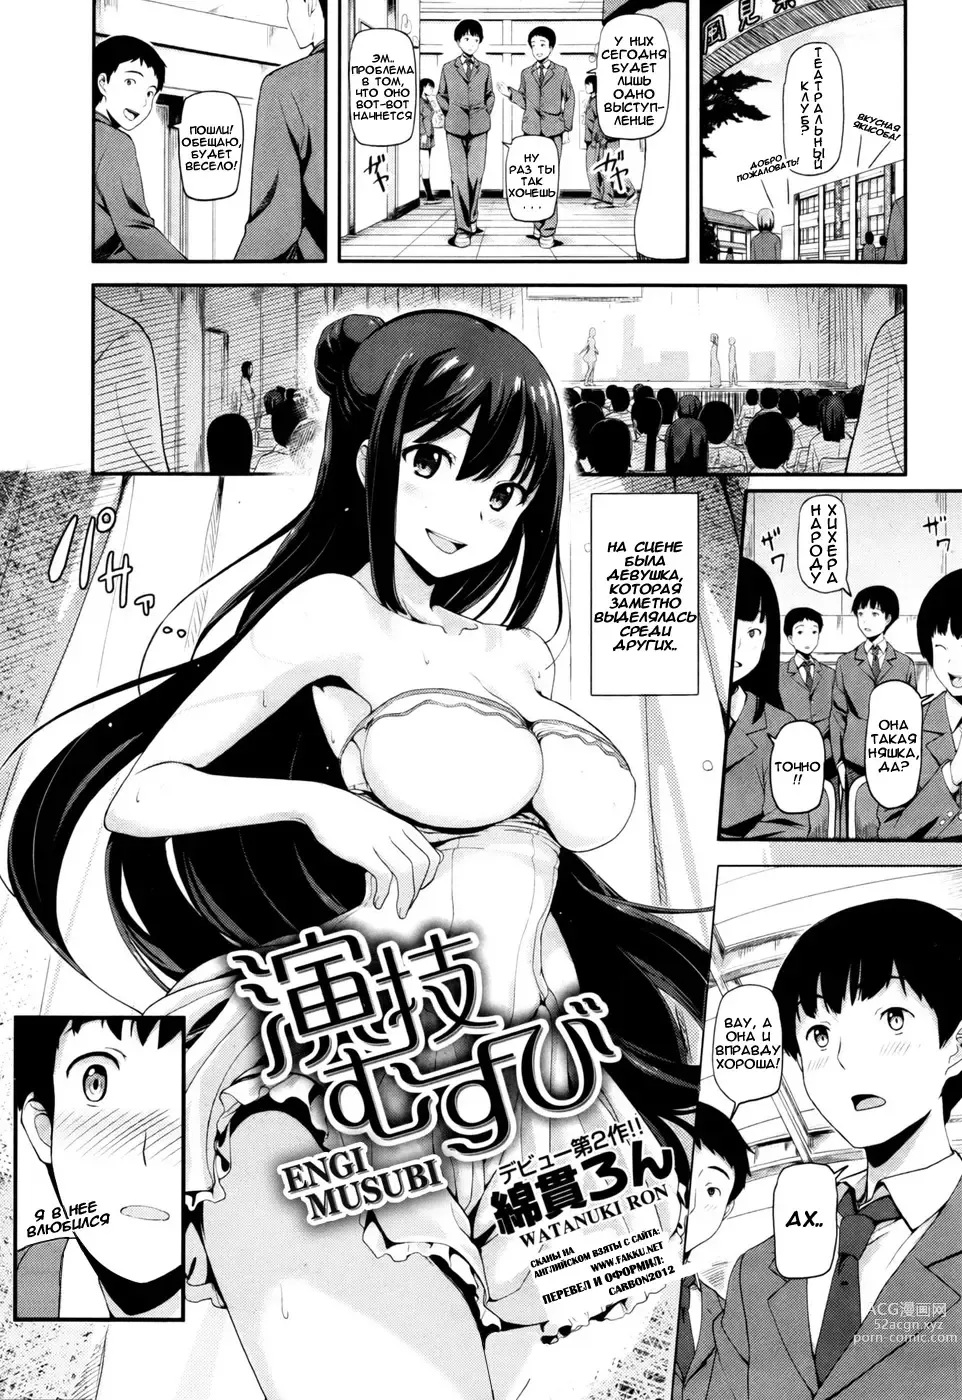 Page 1 of manga Engi Musubi